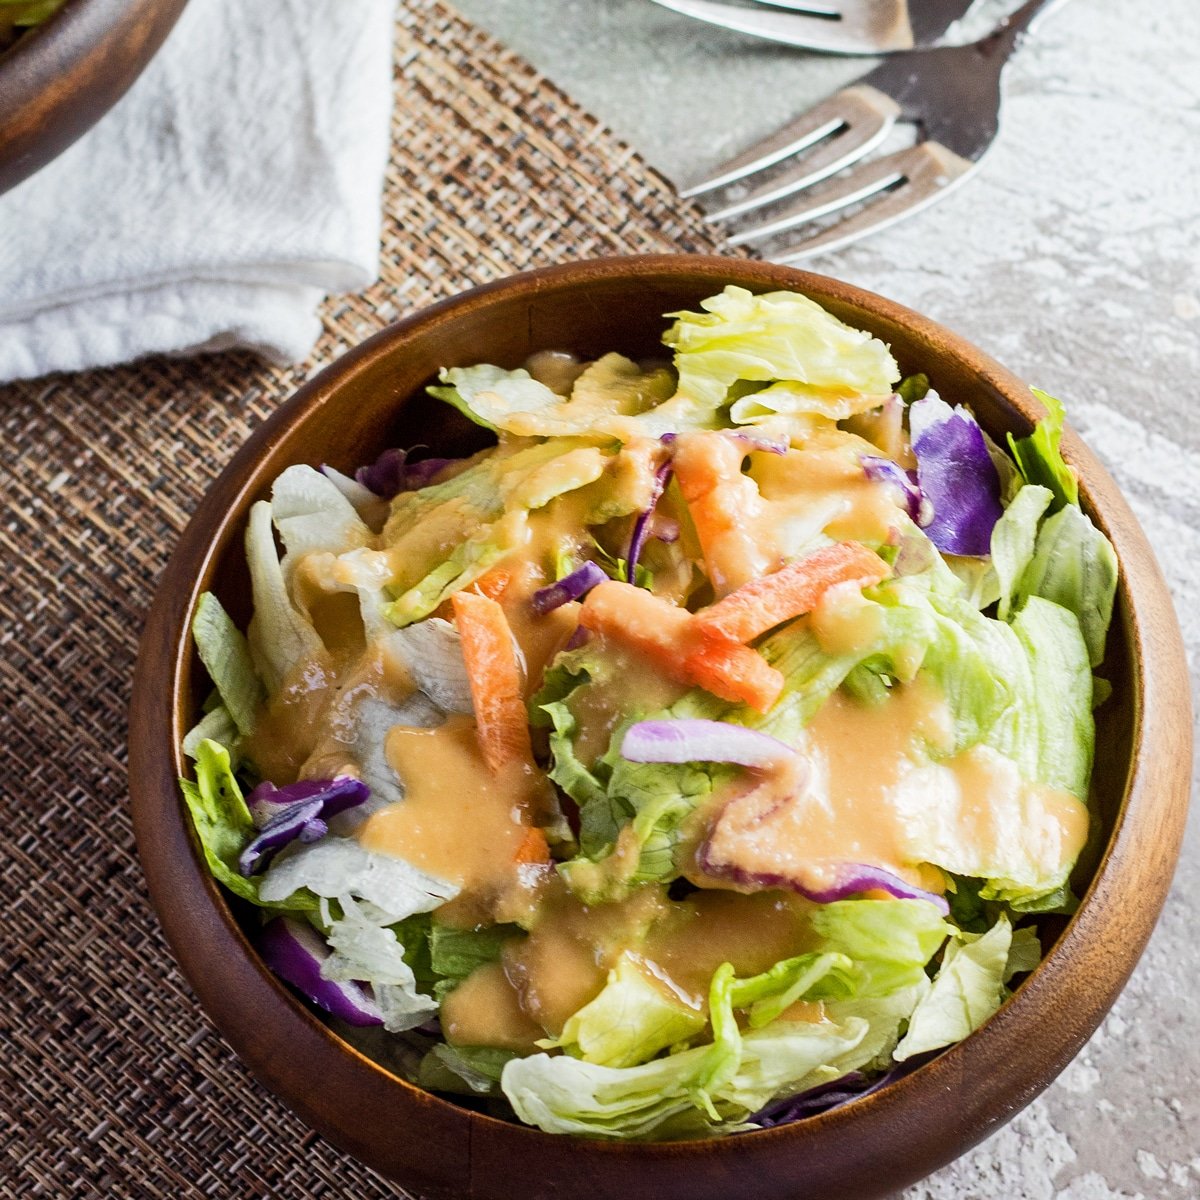 Gambar persegi besar hiasan salad benihana halia disajikan di atas salad dalam mangkuk buluh gelap dengan latar belakang bertekstur ringan.